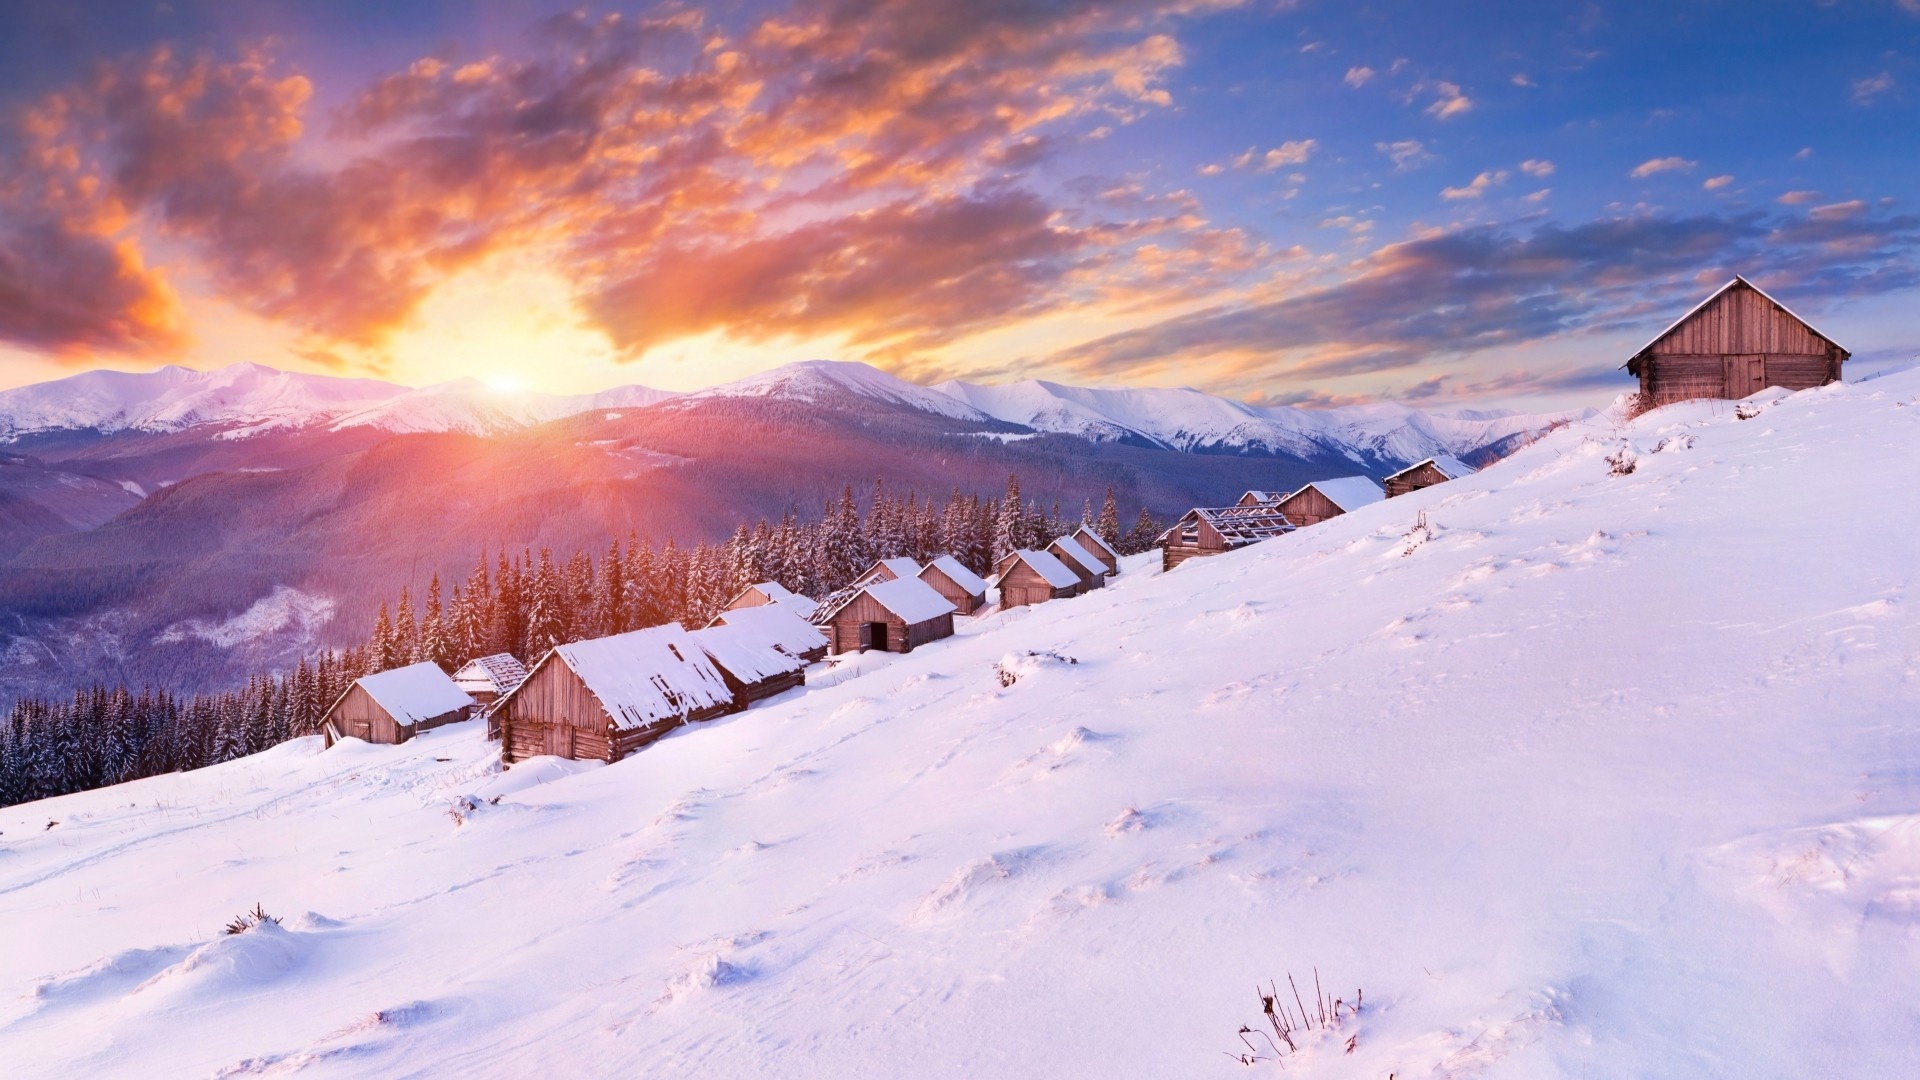 Snow, Mountain scenery, Winter hills, Cozy cabin, 1920x1080 Full HD Desktop